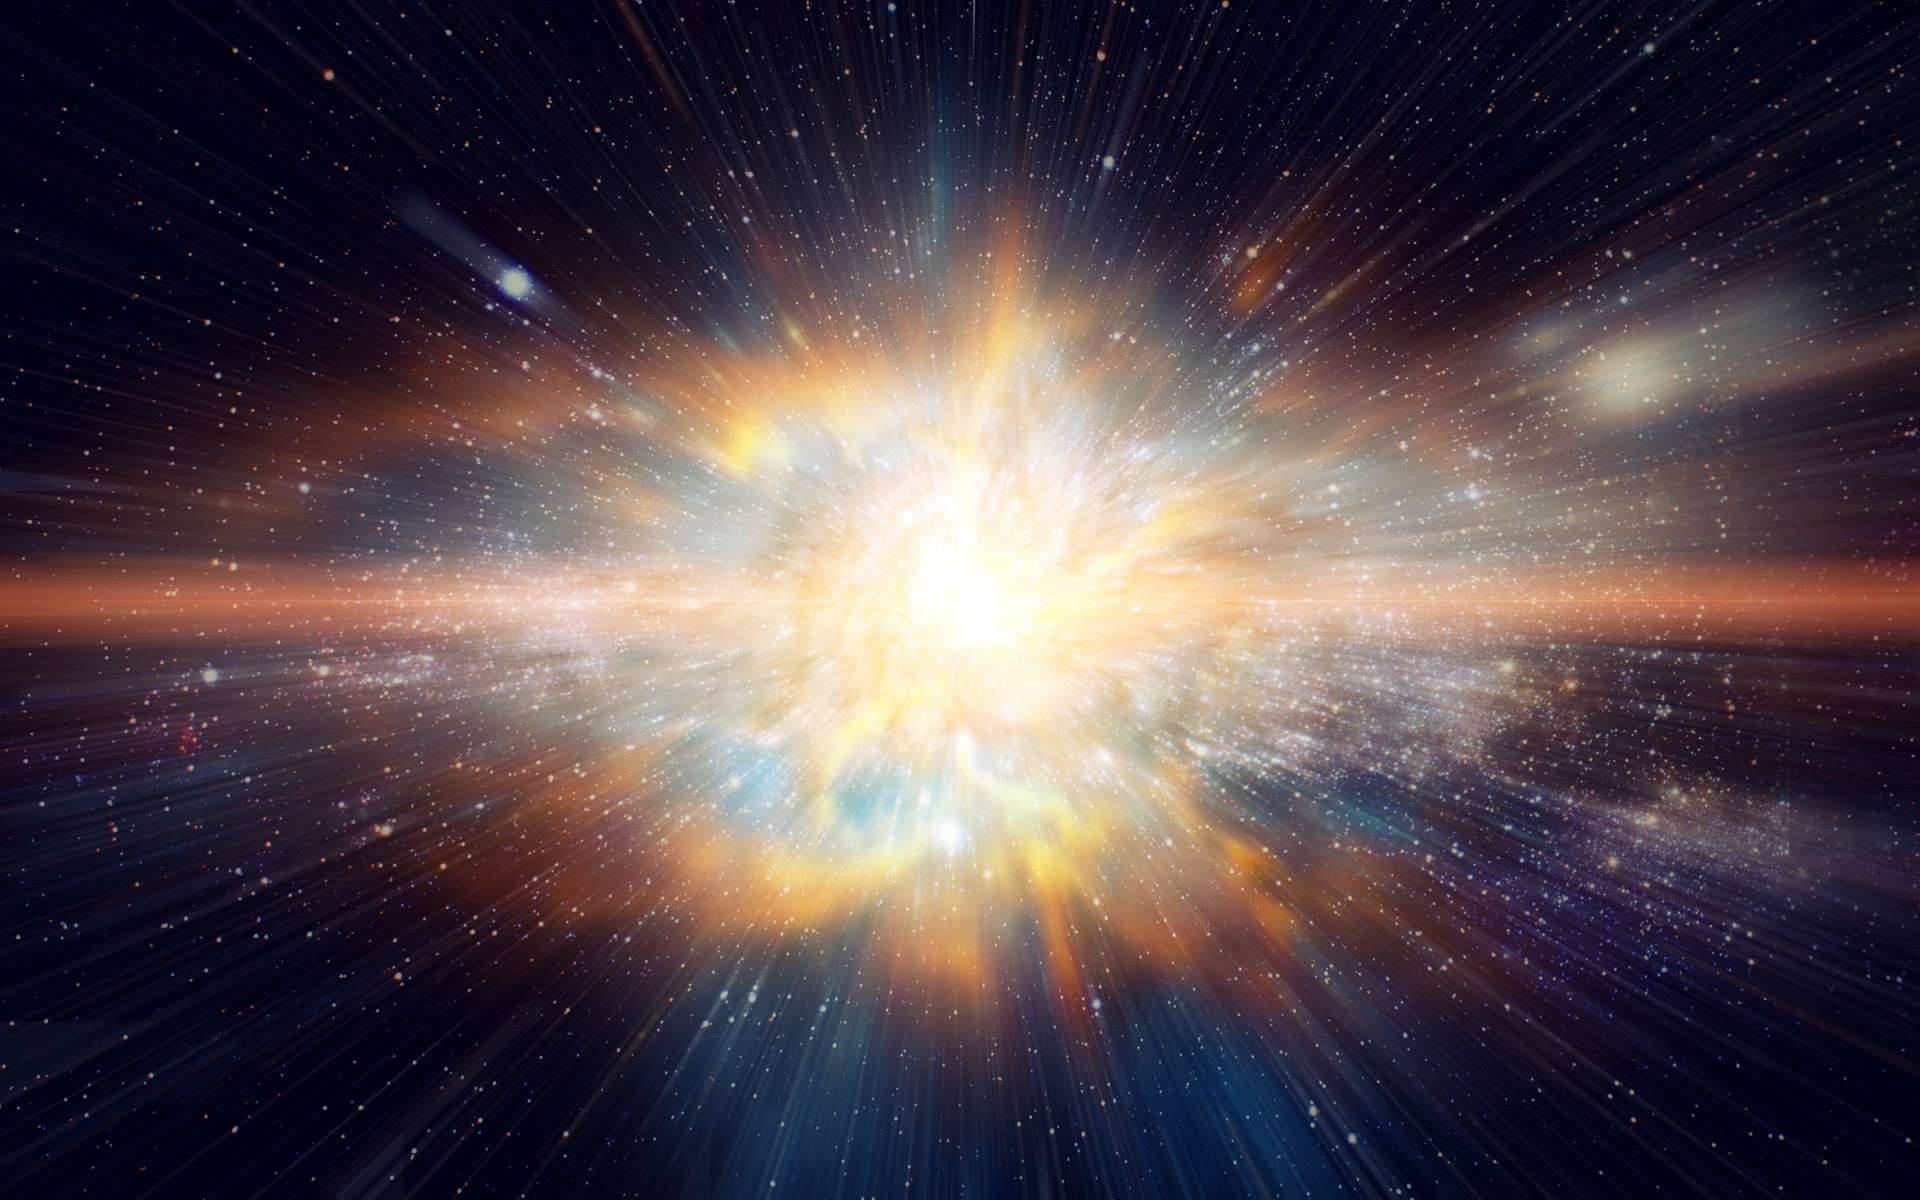 La vie sur Terre aurait évolué sous l’influence d’étoiles massives qui ont explosé en supernovae dans les environs du Système solaire sur les 3,5 derniers milliards d’années. © Quality Stock Arts, Adobe Stock